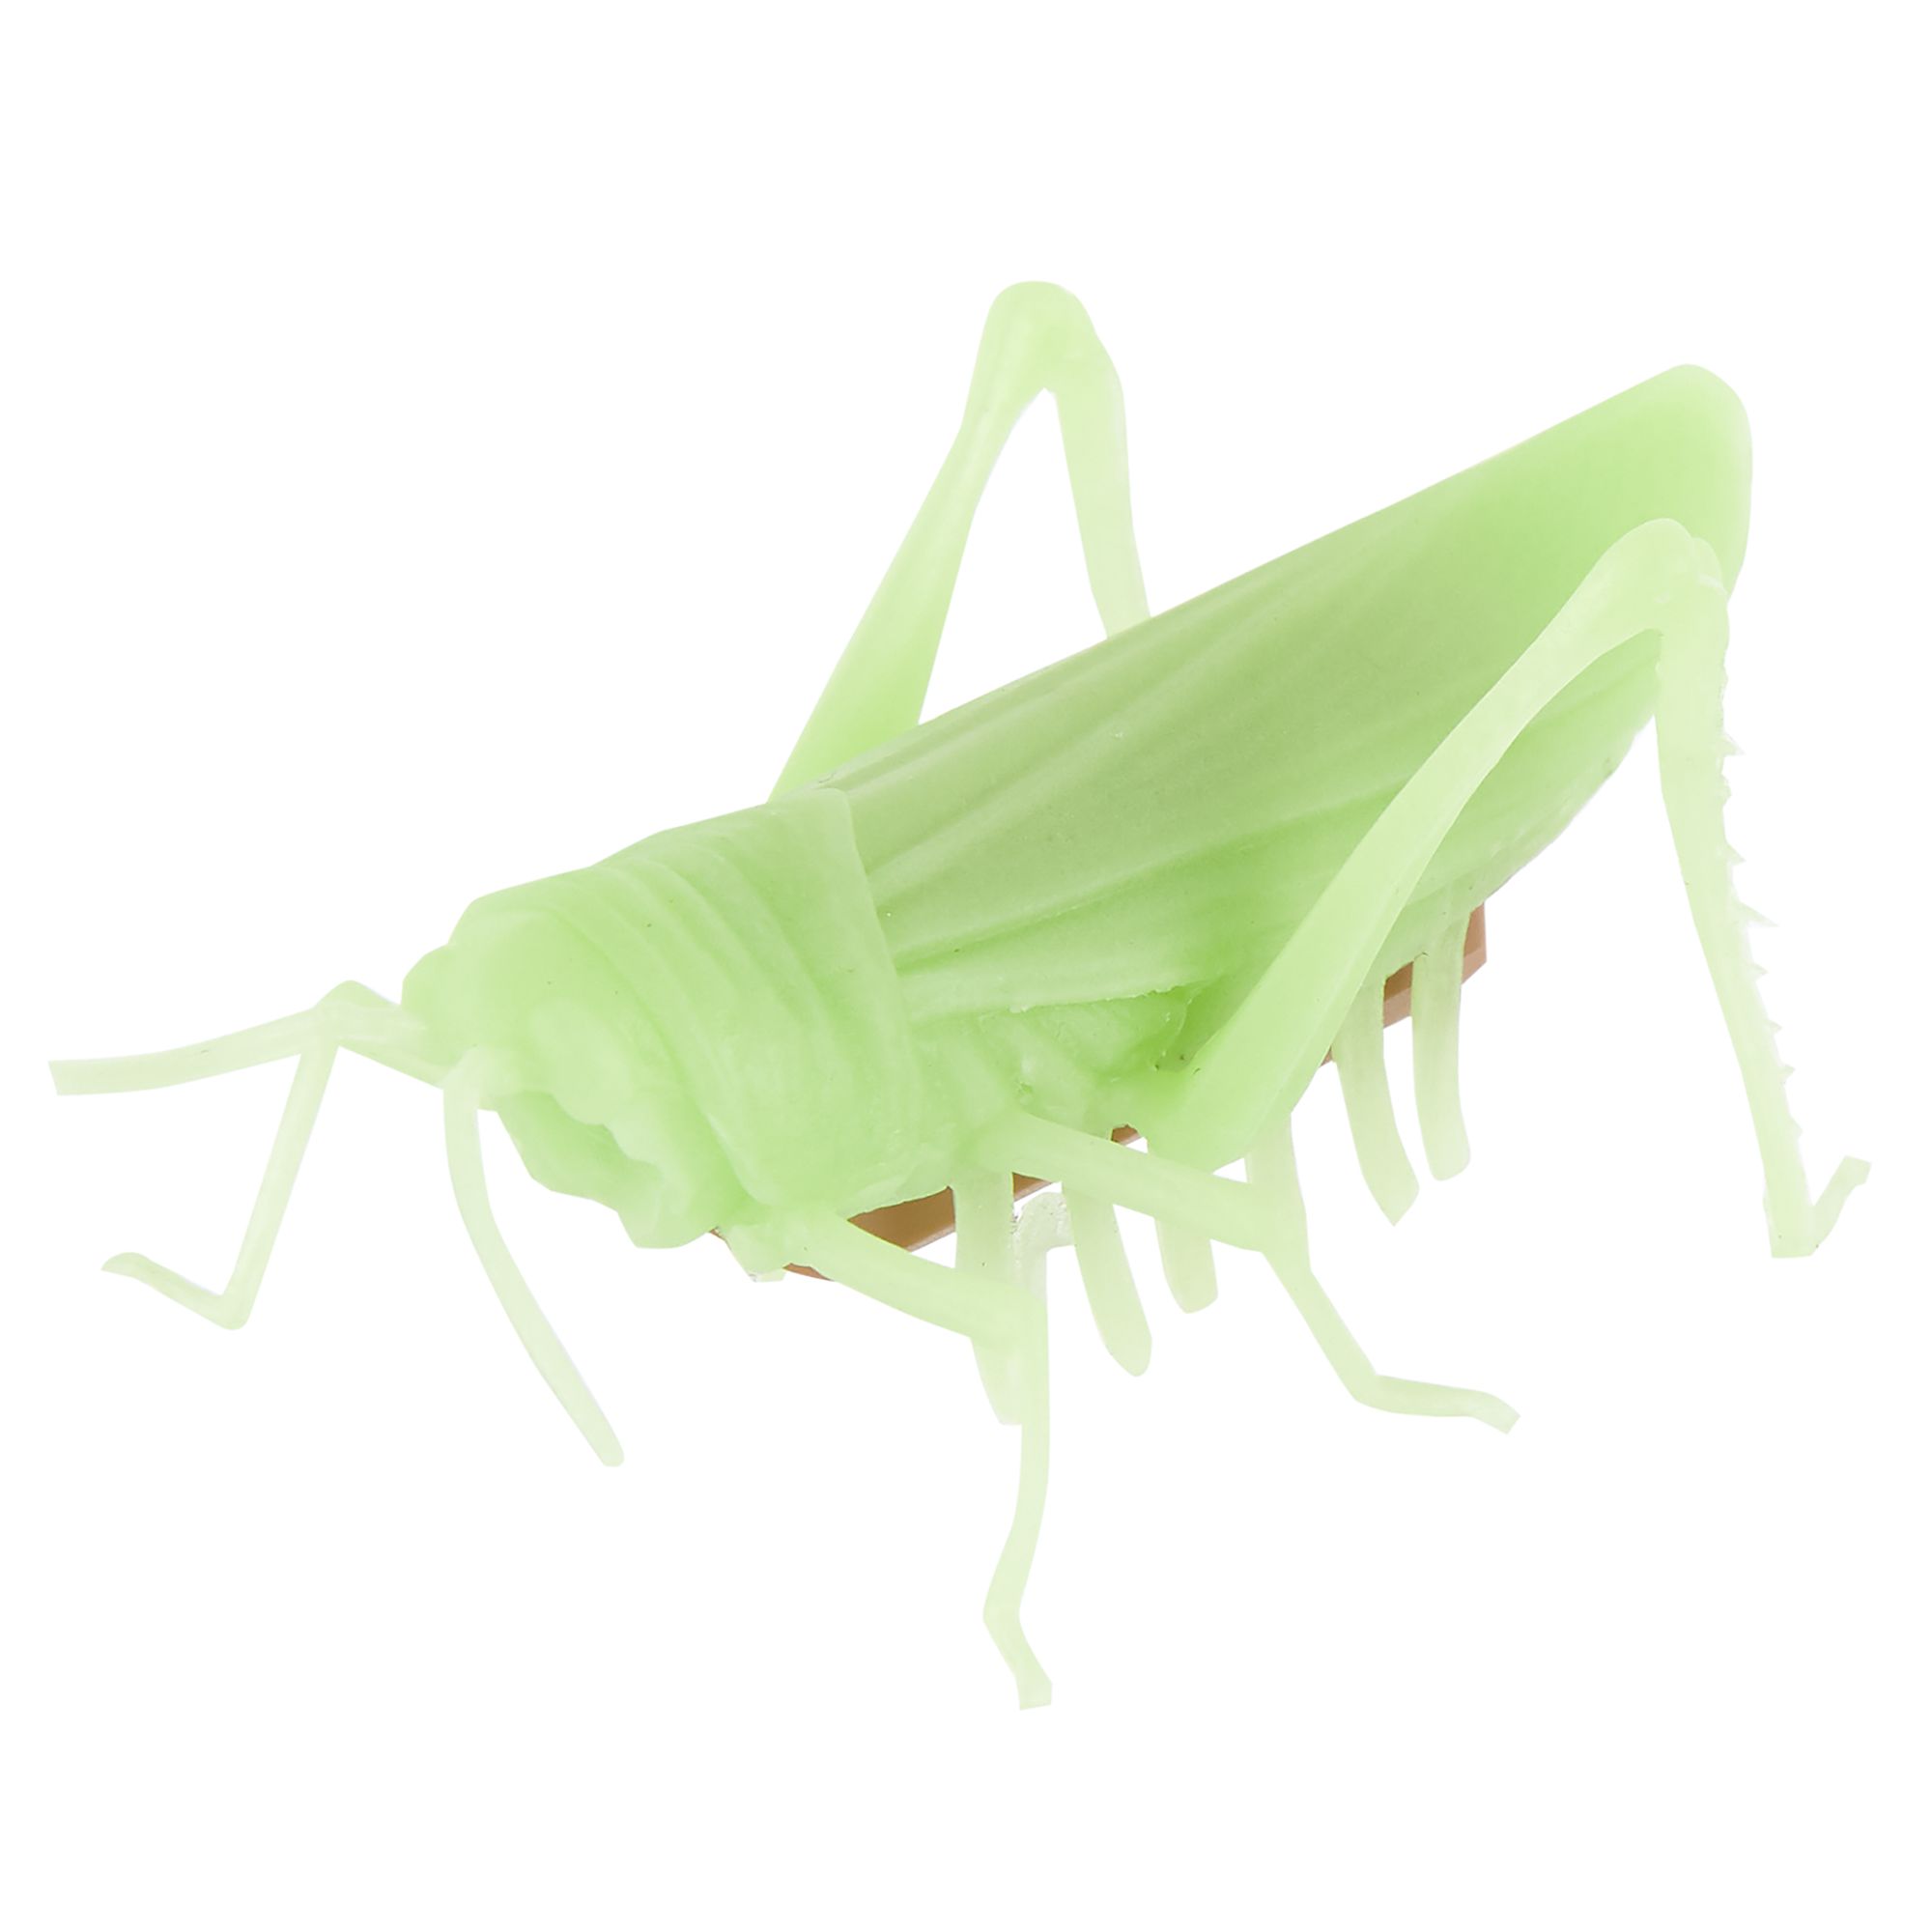 grasshopper toy